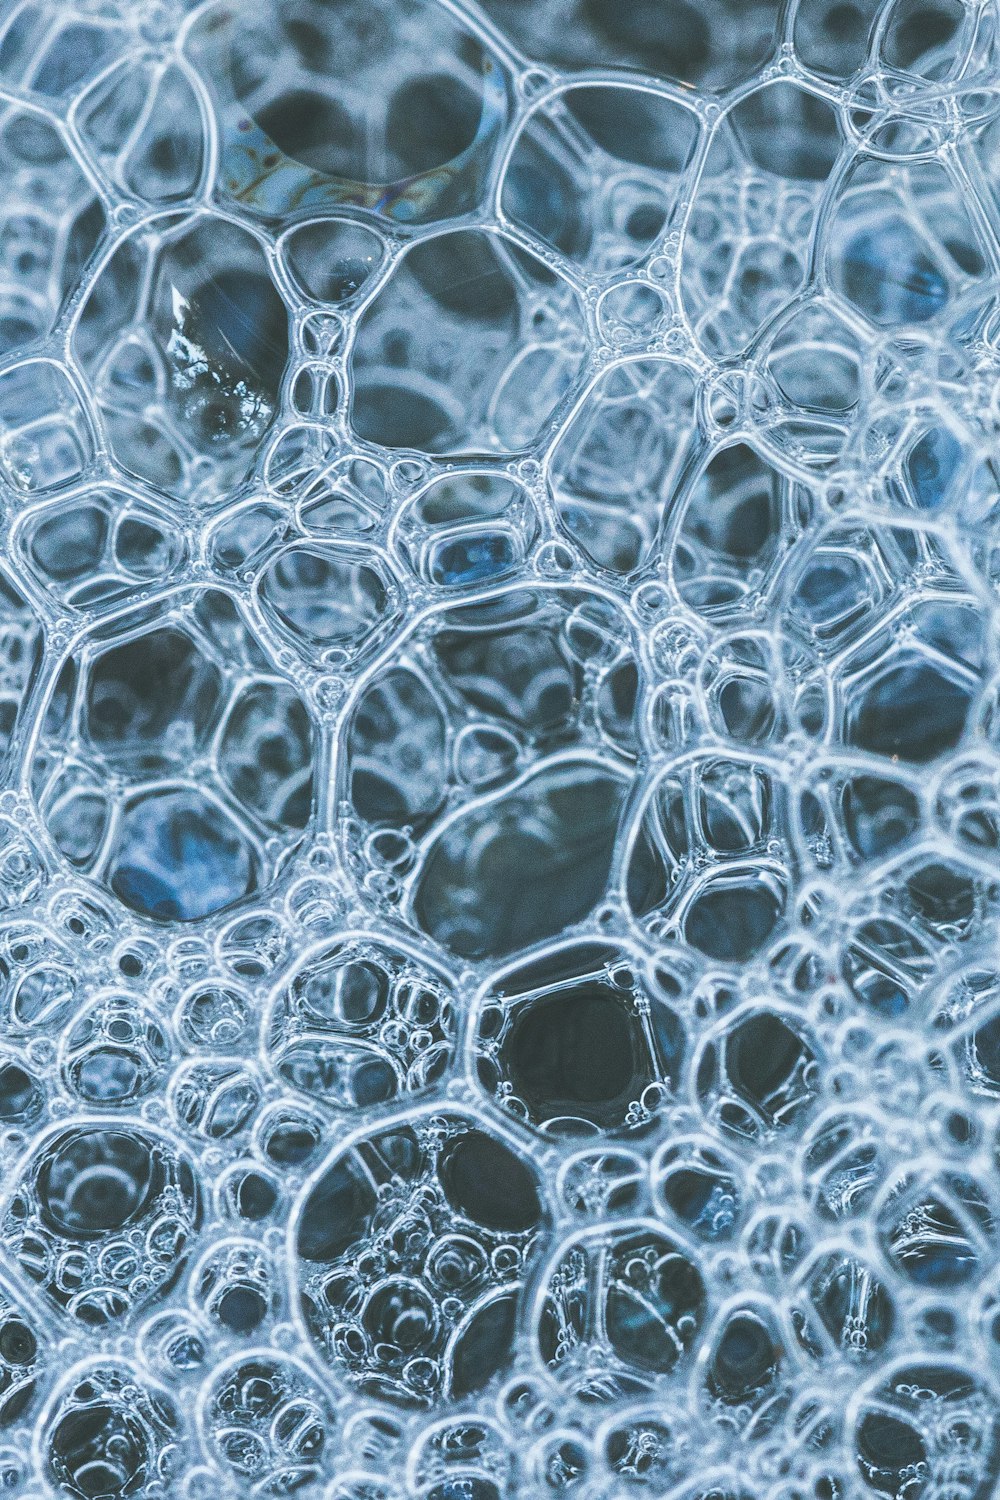 gotículas de água em vidro transparente